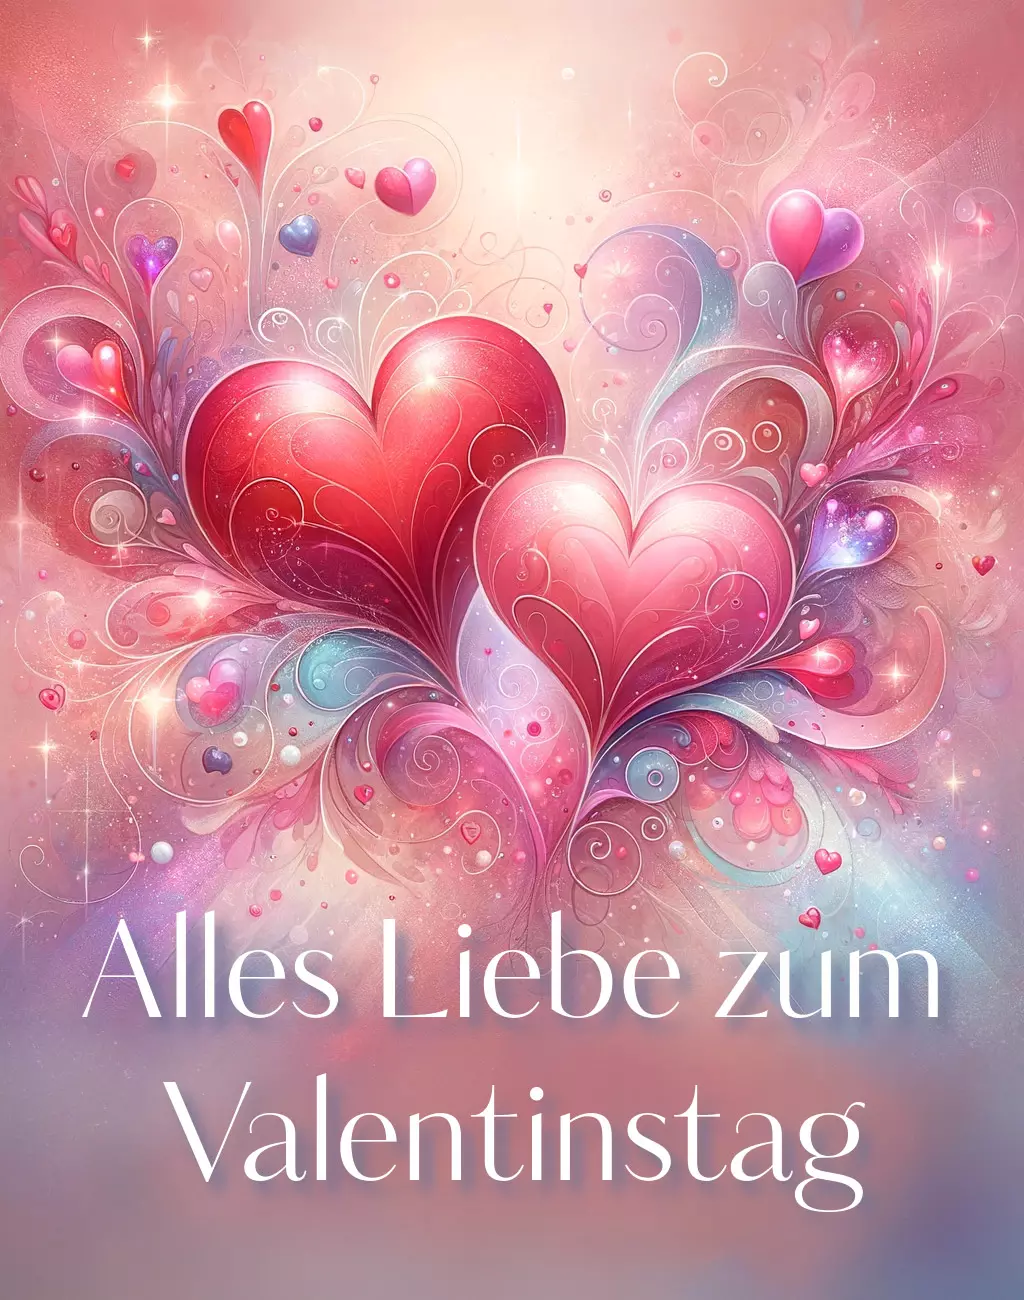 #valentinstag #kunst 24 - Alles Liebe zum Valentinstag!